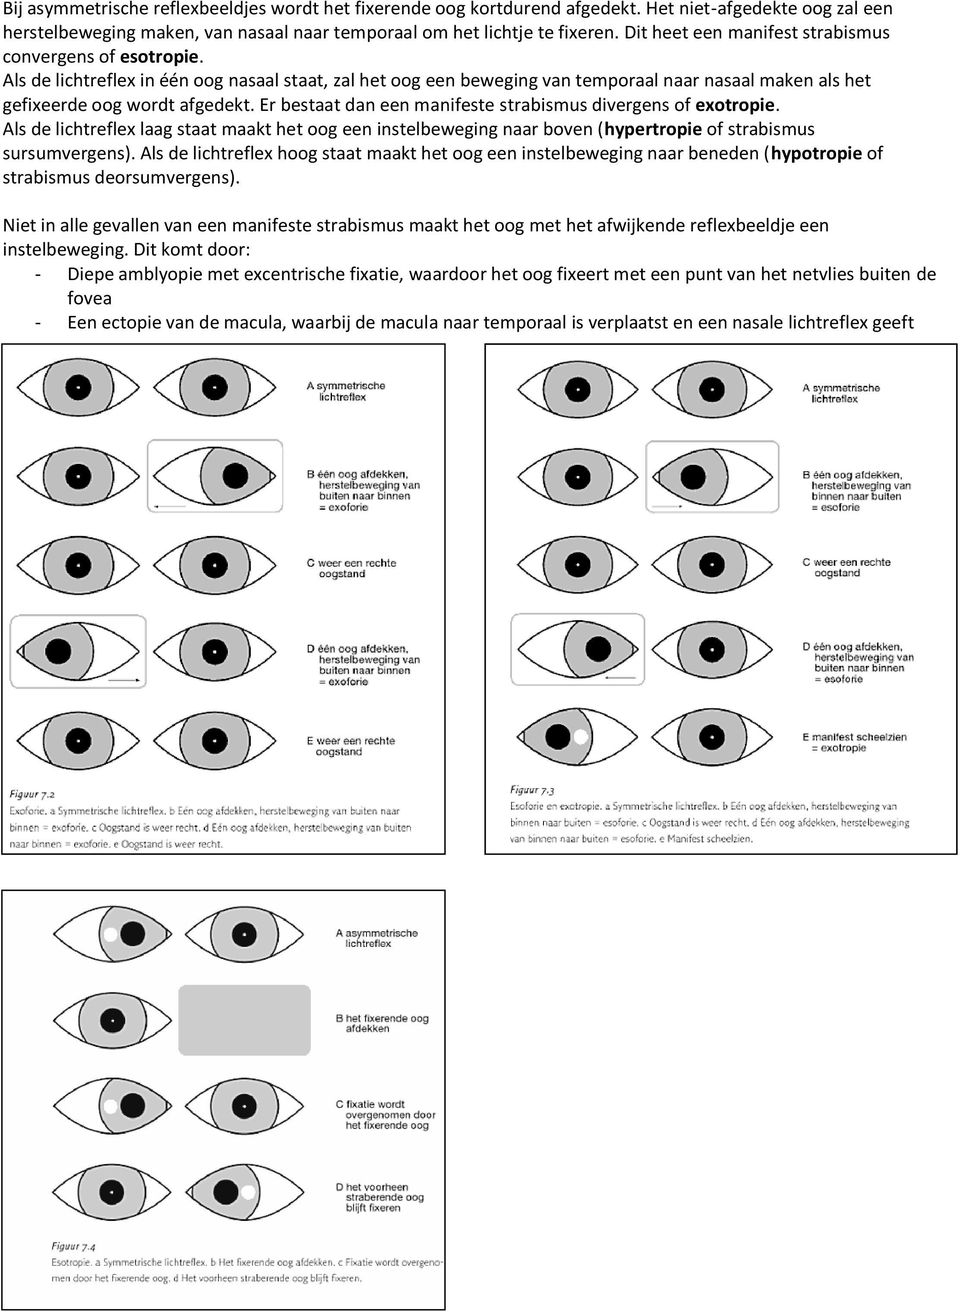 Er bestaat dan een manifeste strabismus divergens of exotropie. Als de lichtreflex laag staat maakt het oog een instelbeweging naar boven (hypertropie of strabismus sursumvergens).